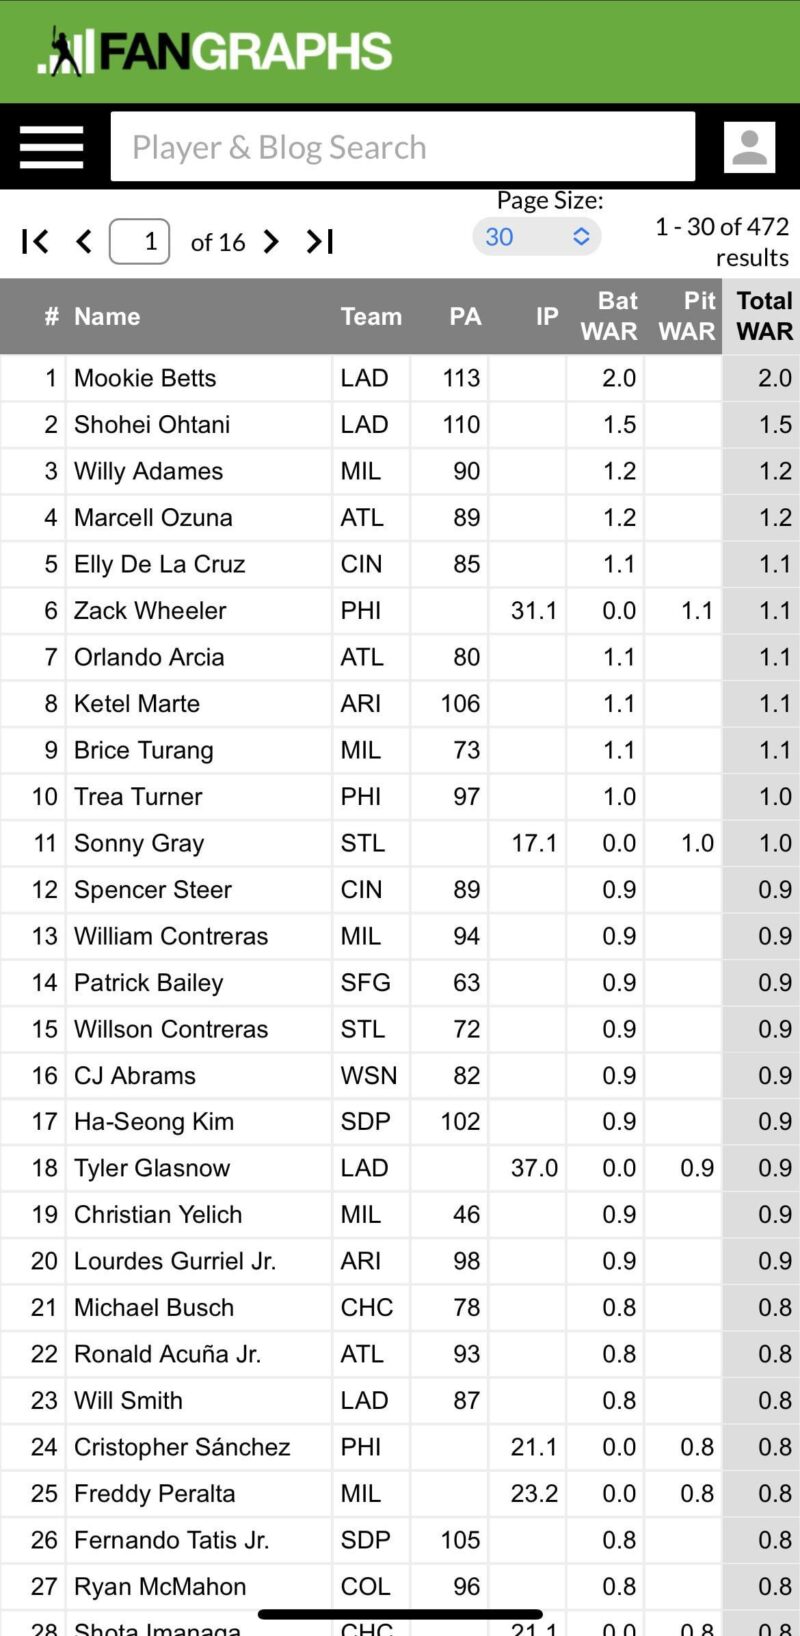 ご参考までに; ブルワーズの内野手の半分はナ・リーグのWARトップ10に入っている。